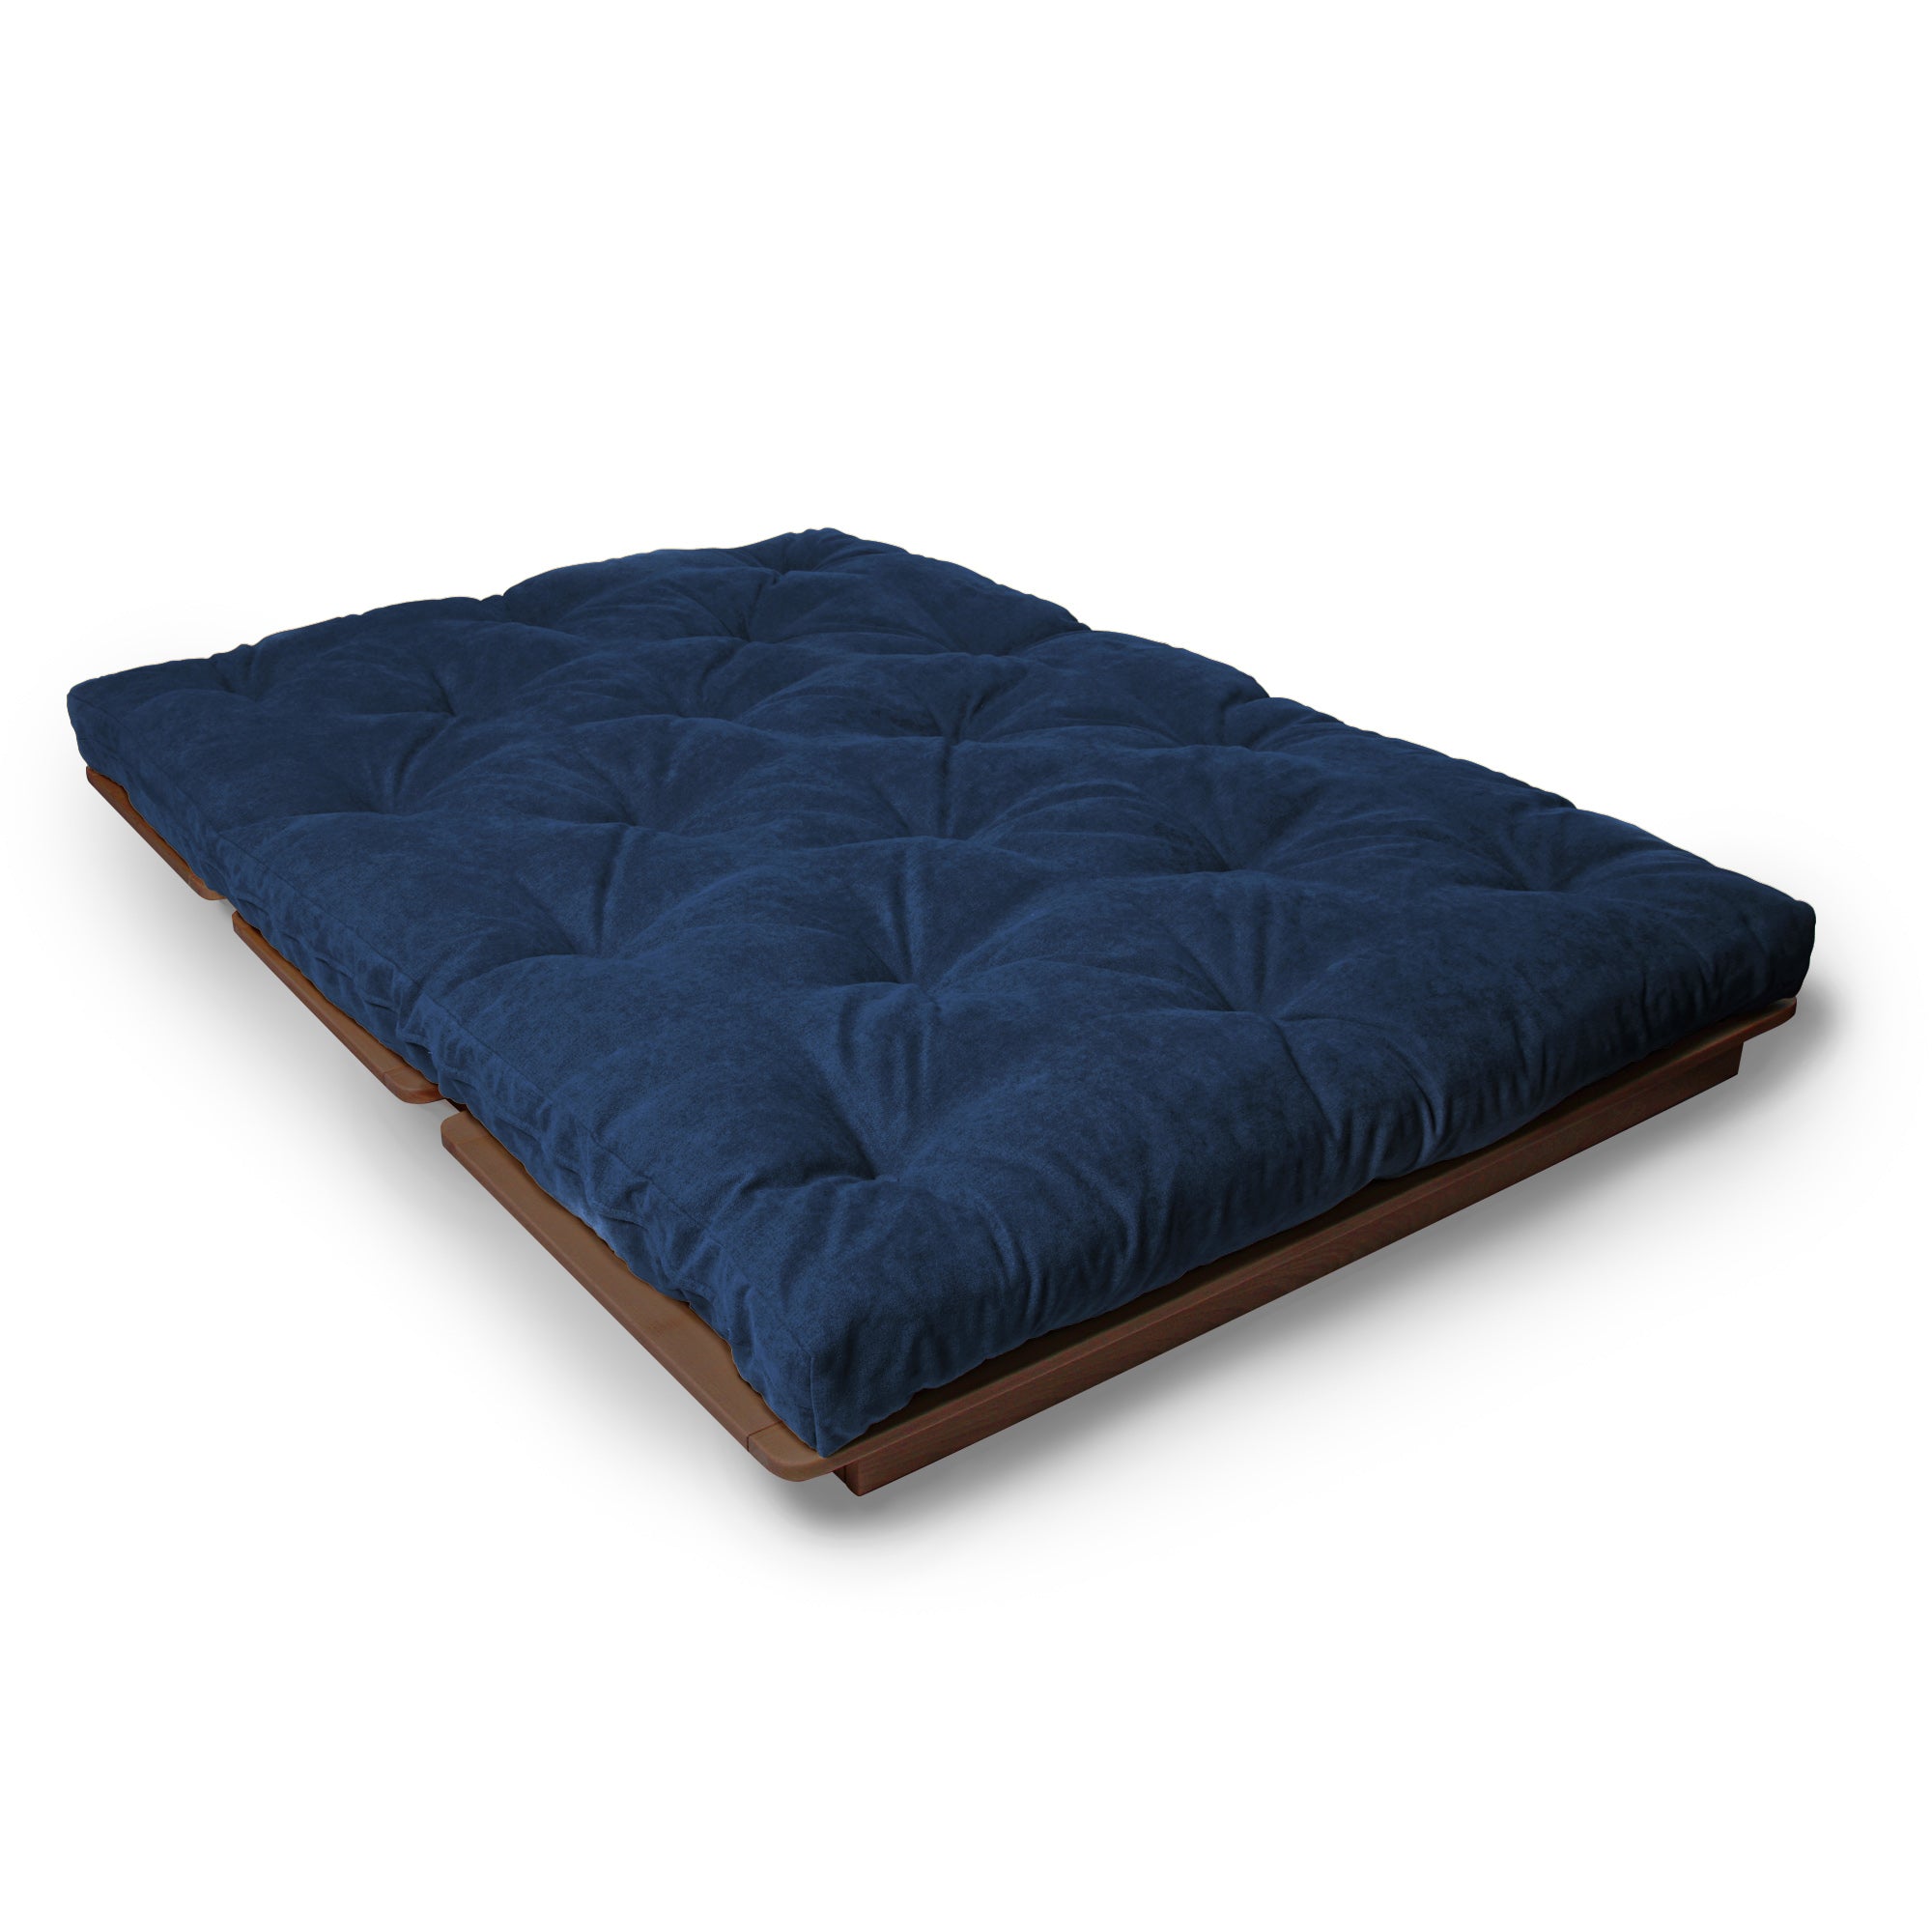 LAYTI-140 Sedia futon, legno di faggio, colore noce